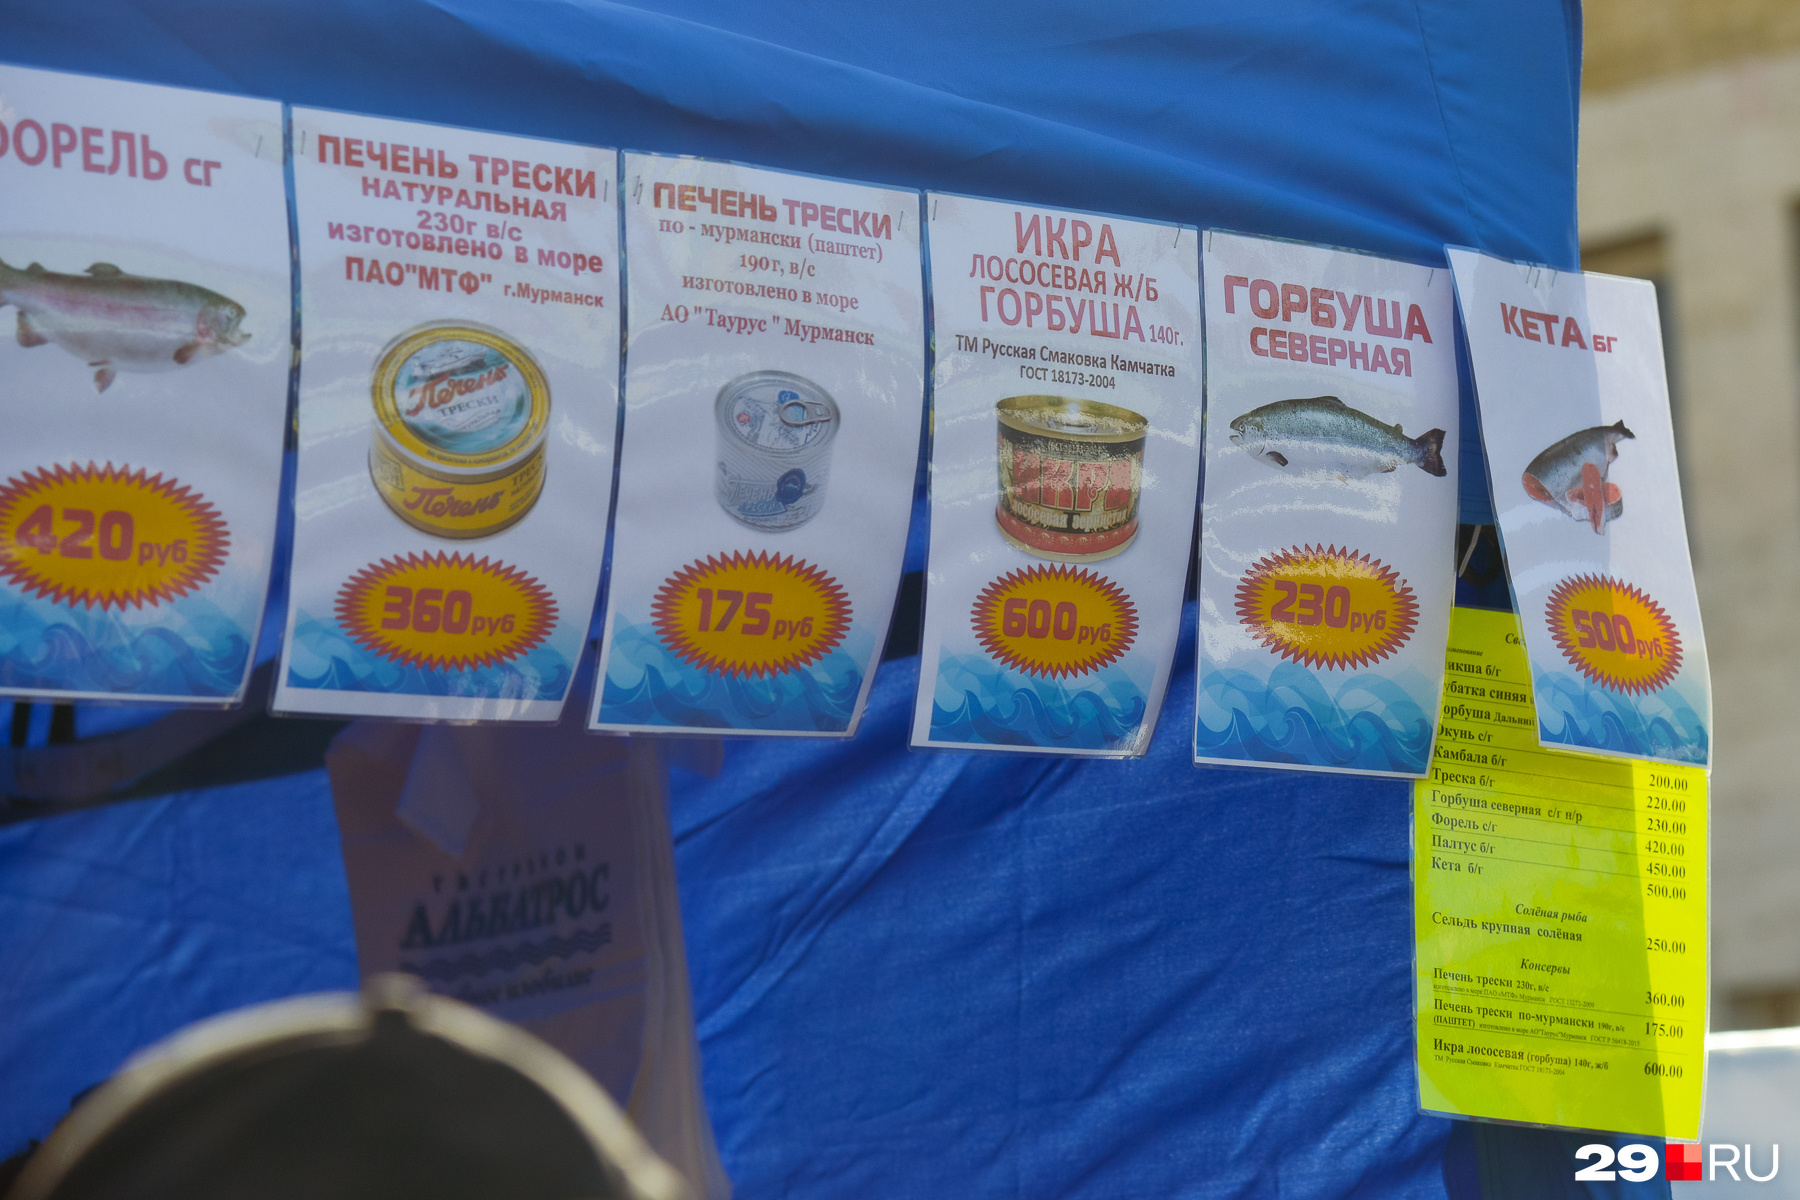 Продаются и рыбные деликатесы. Печень трески, например, обойдется от 175 до 360 рублей за баночку